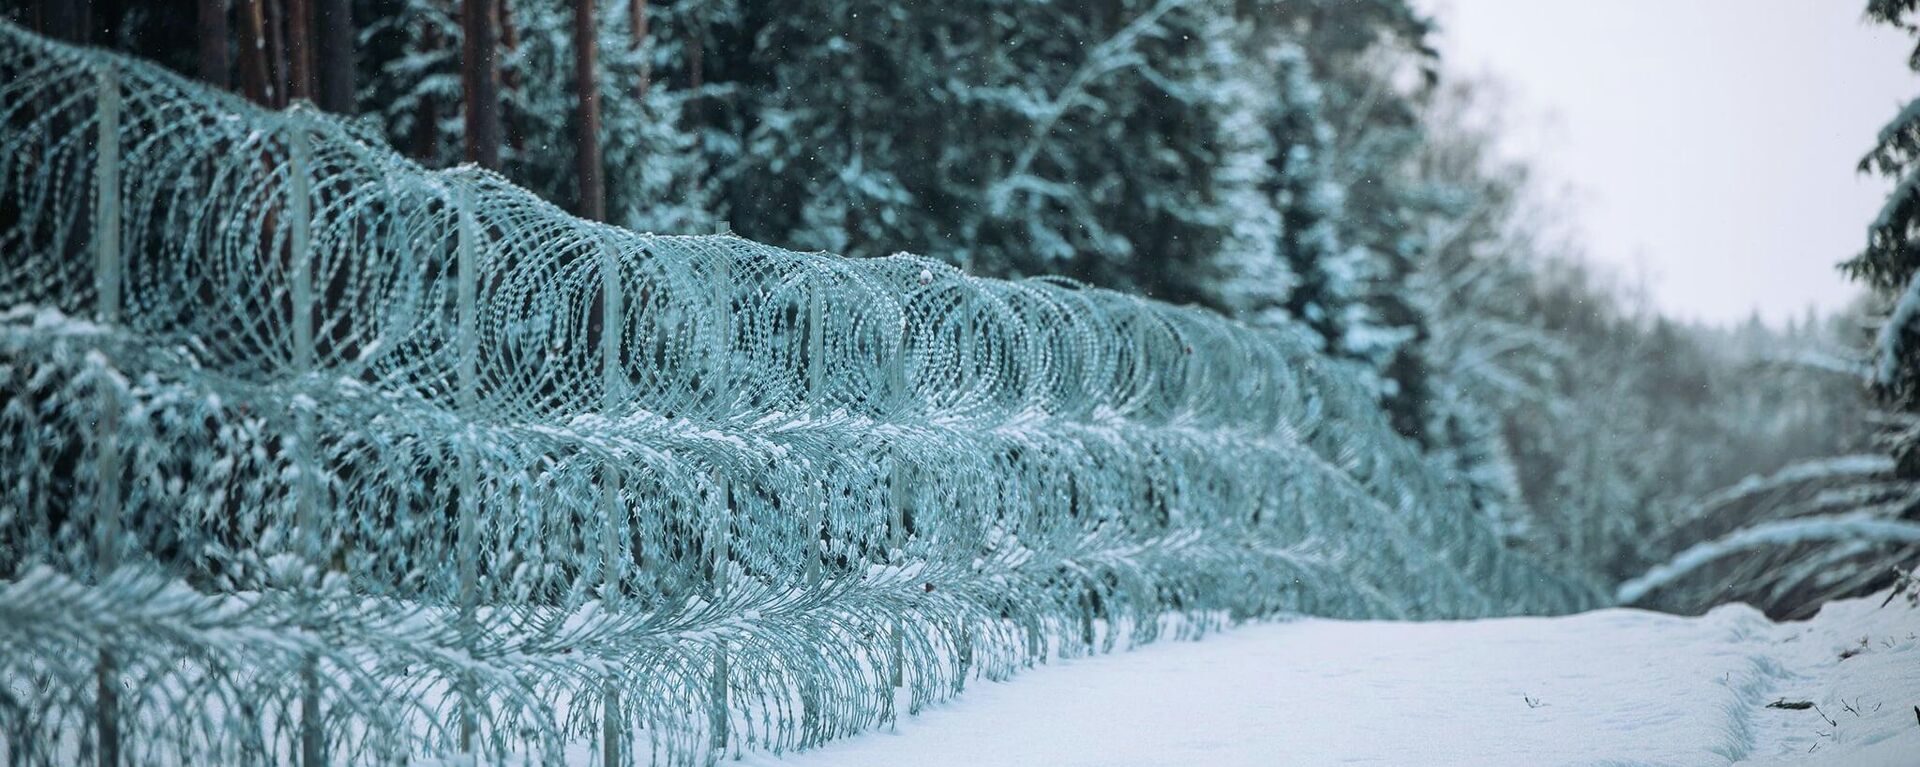 Забор из колючей проволоки на латвийско-белорусской границе  - Sputnik Латвия, 1920, 24.12.2021